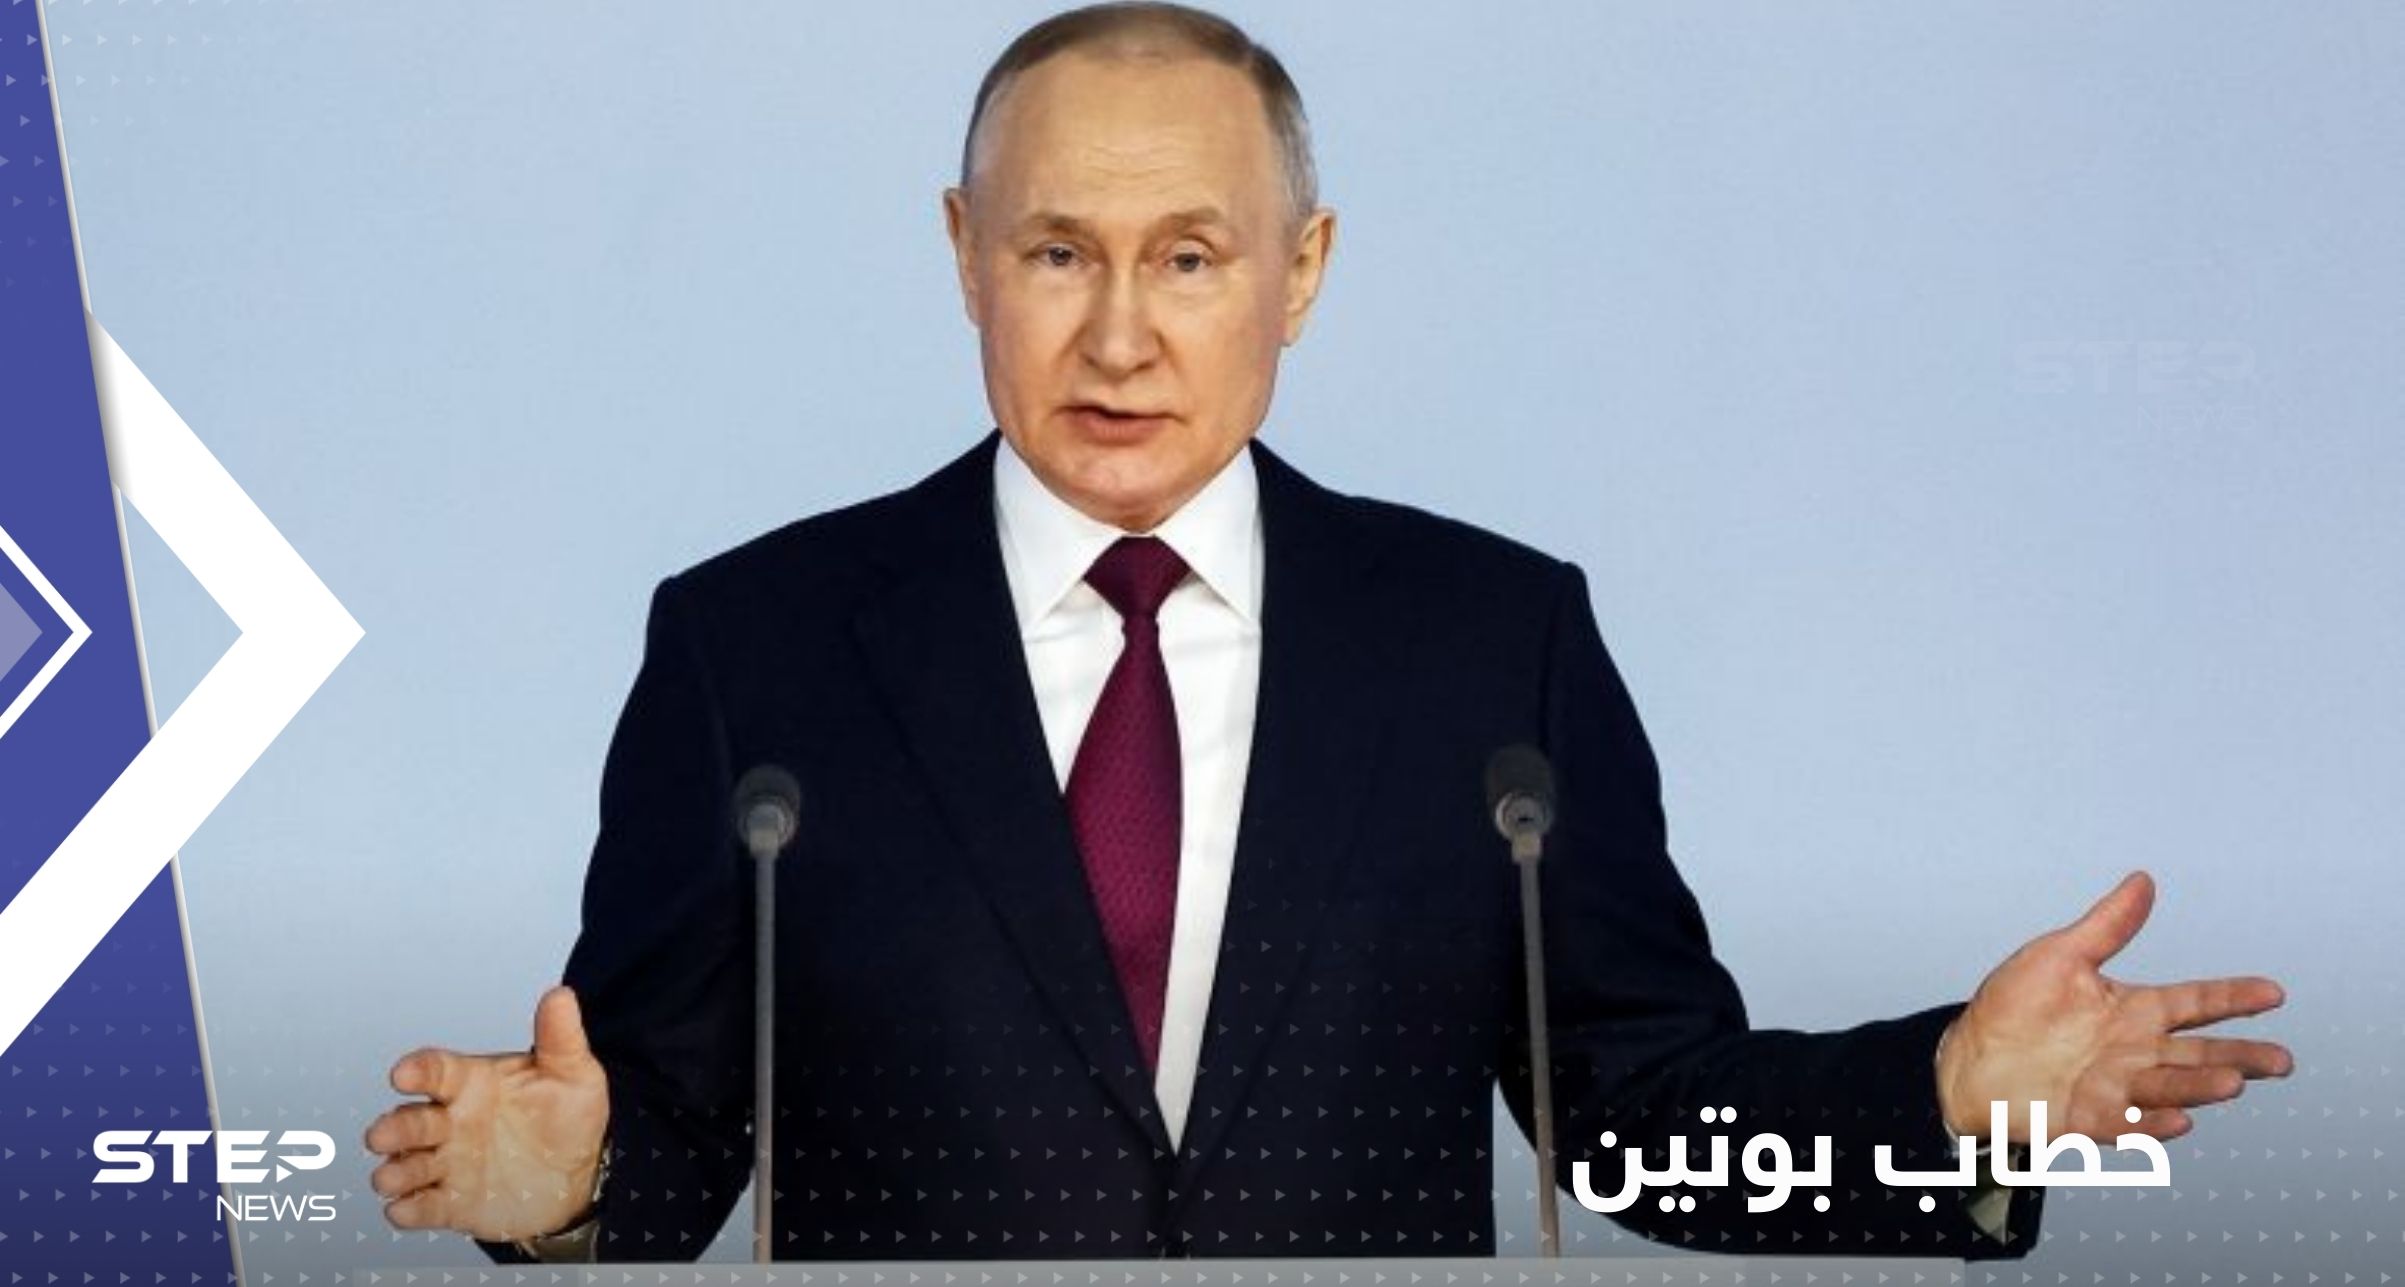 بوتين يتحدث عن أنظمة هجومية جديدة ويتوعد بخطوة عسكرية عشية الذكرى السنوية للهجوم أوكرانيا